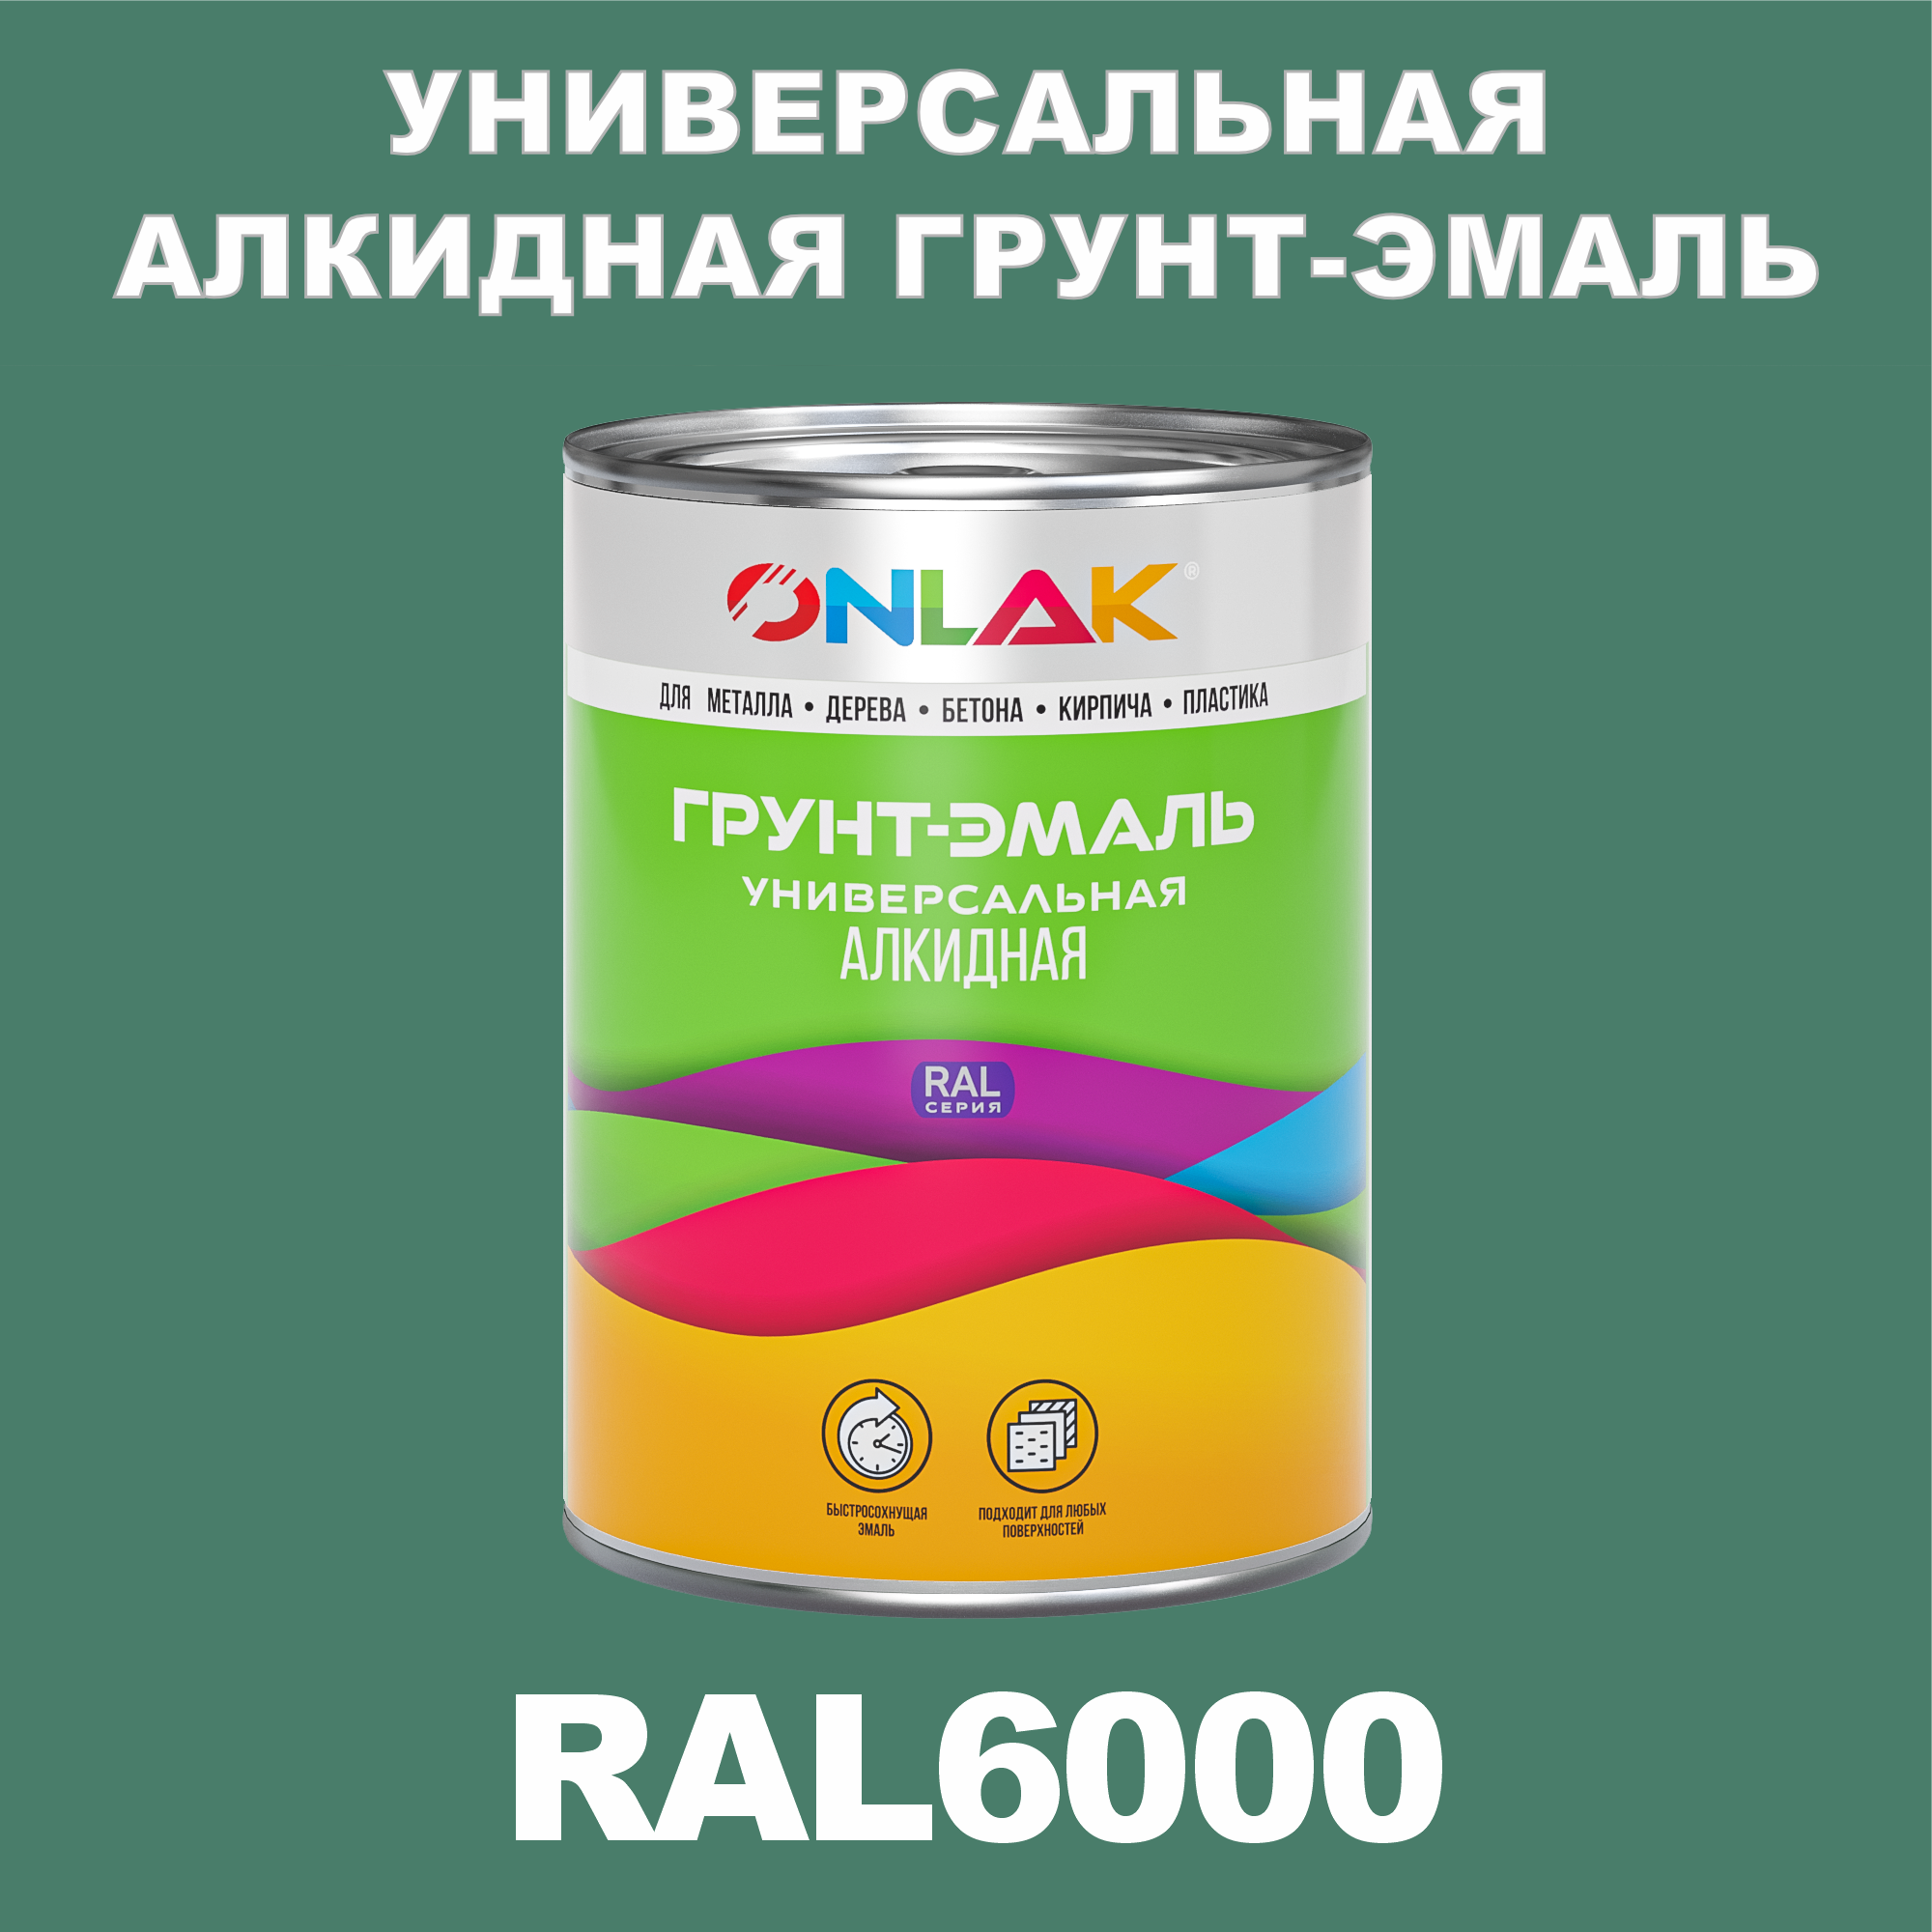 Грунт-эмаль ONLAK 1К RAL6000 антикоррозионная алкидная по металлу по ржавчине 1 кг грунт эмаль neomid по ржавчине быстросохнущая алкидная серая 0 9 кг